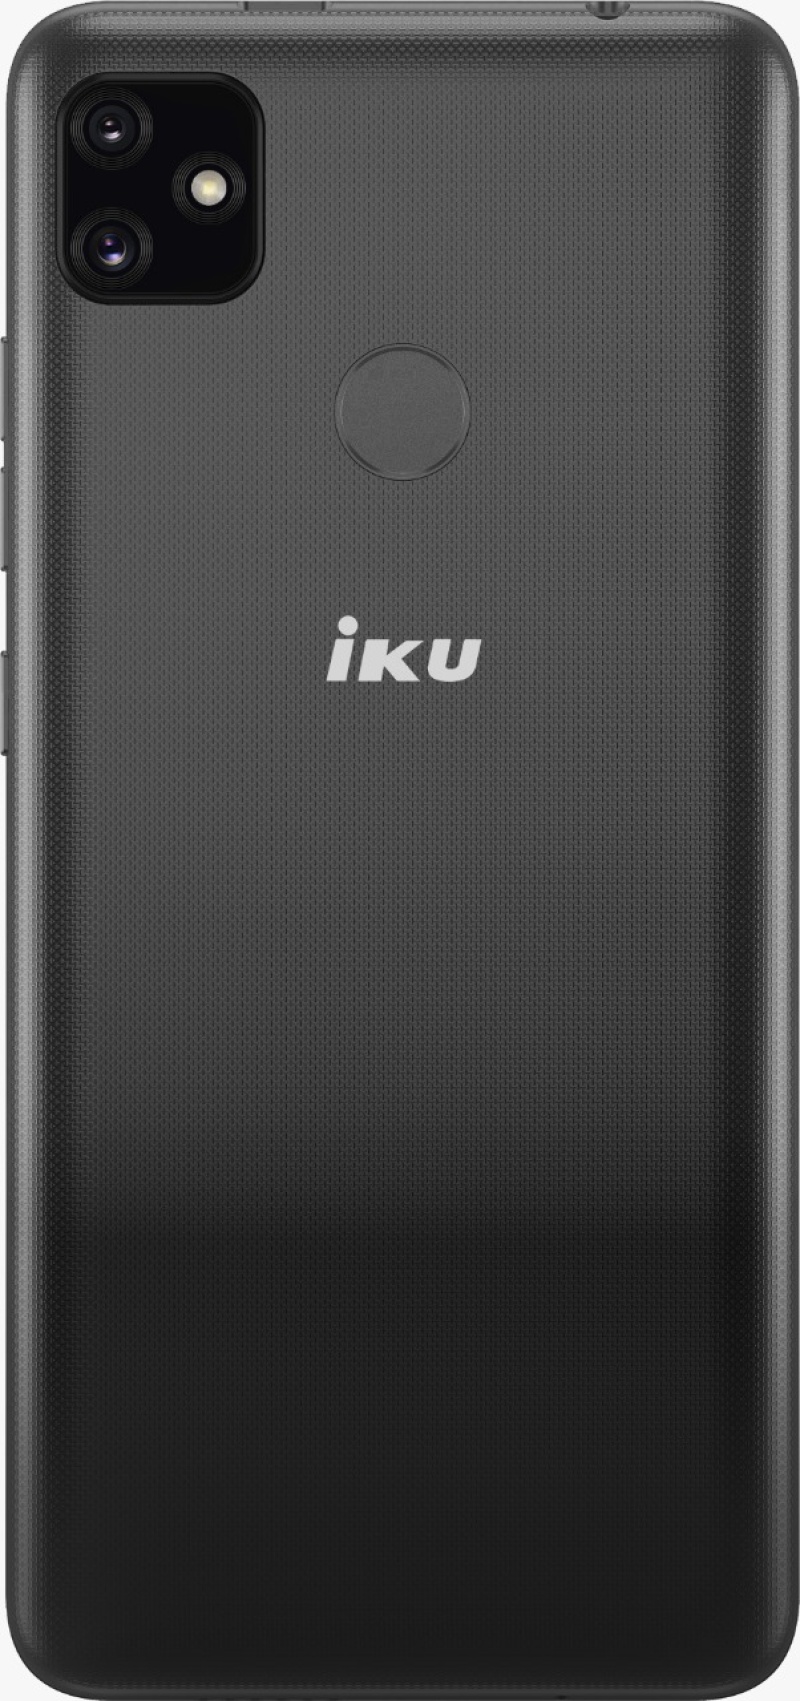 IKU-A23-Slate gray